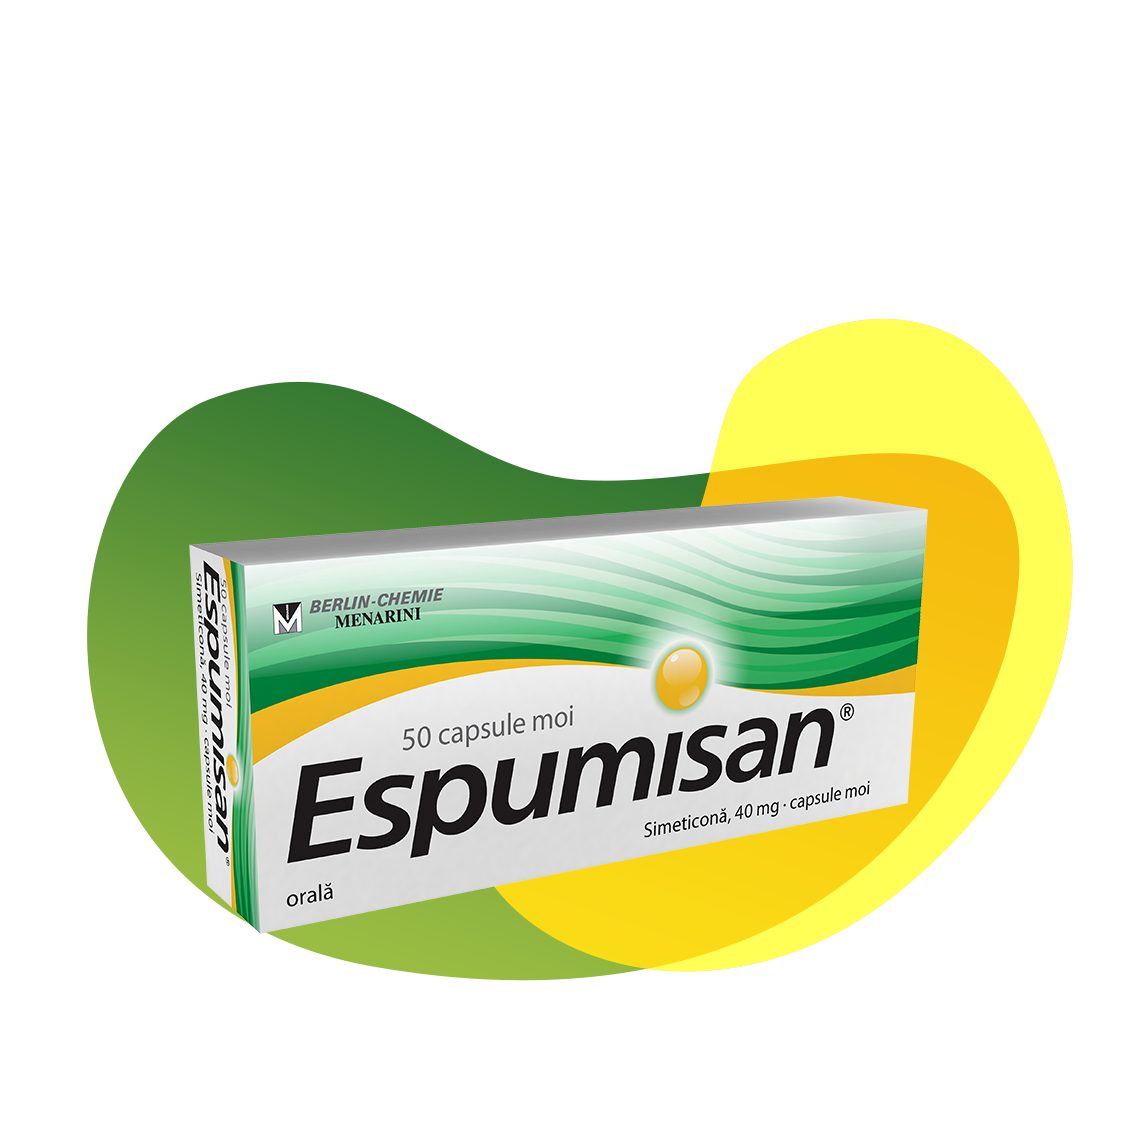 Packaging of Espumisan®